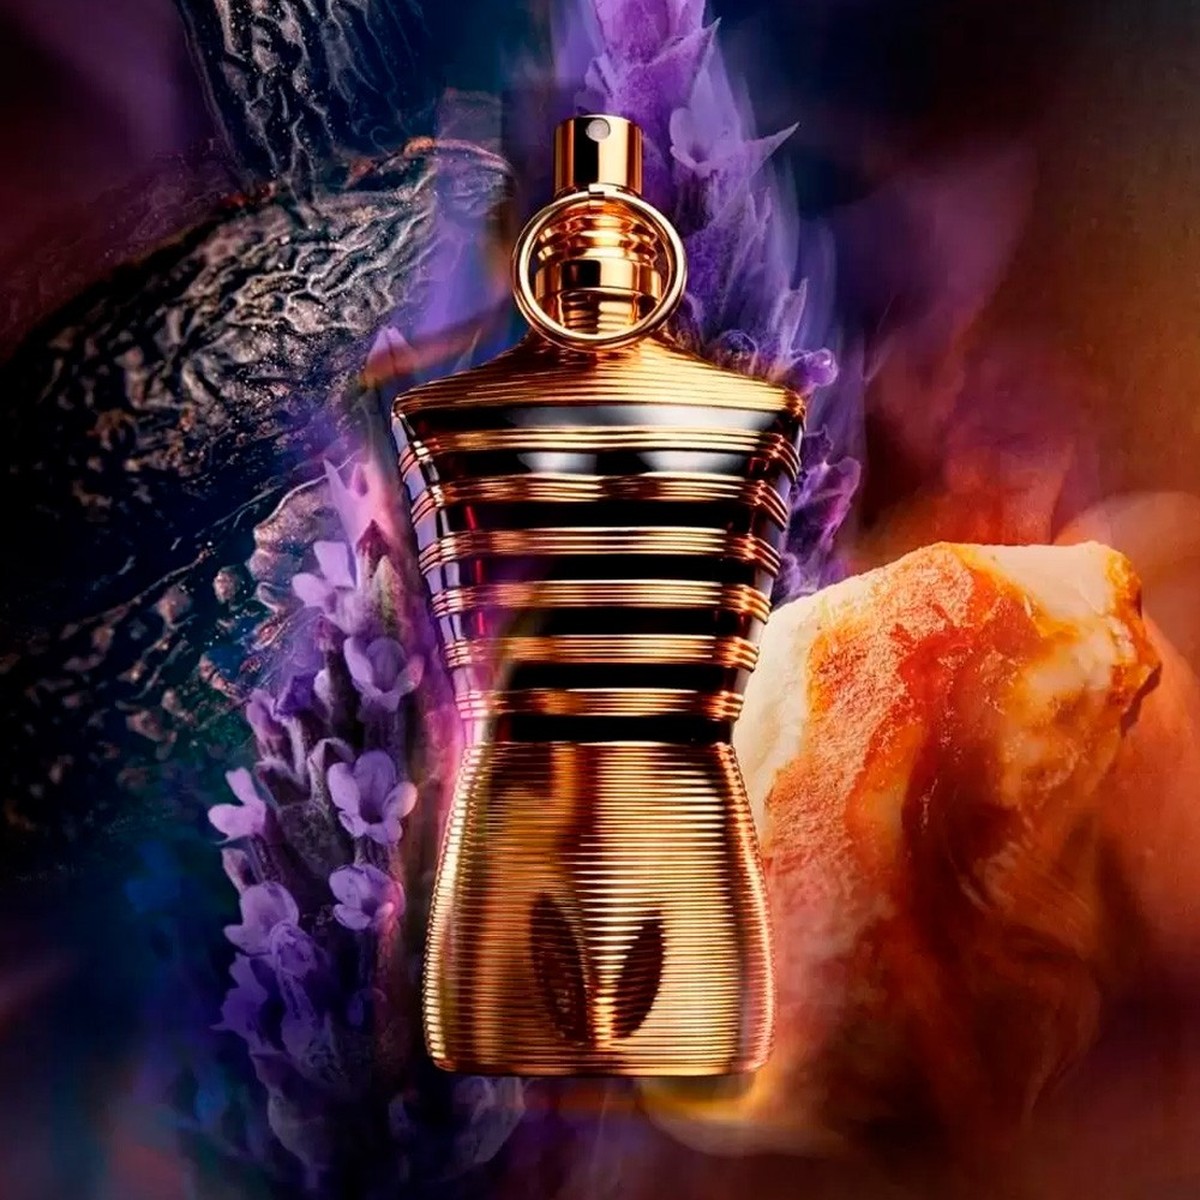 Le Male Elixir Parfum Jean Paul Gaultier Perfume Masculino 75ml